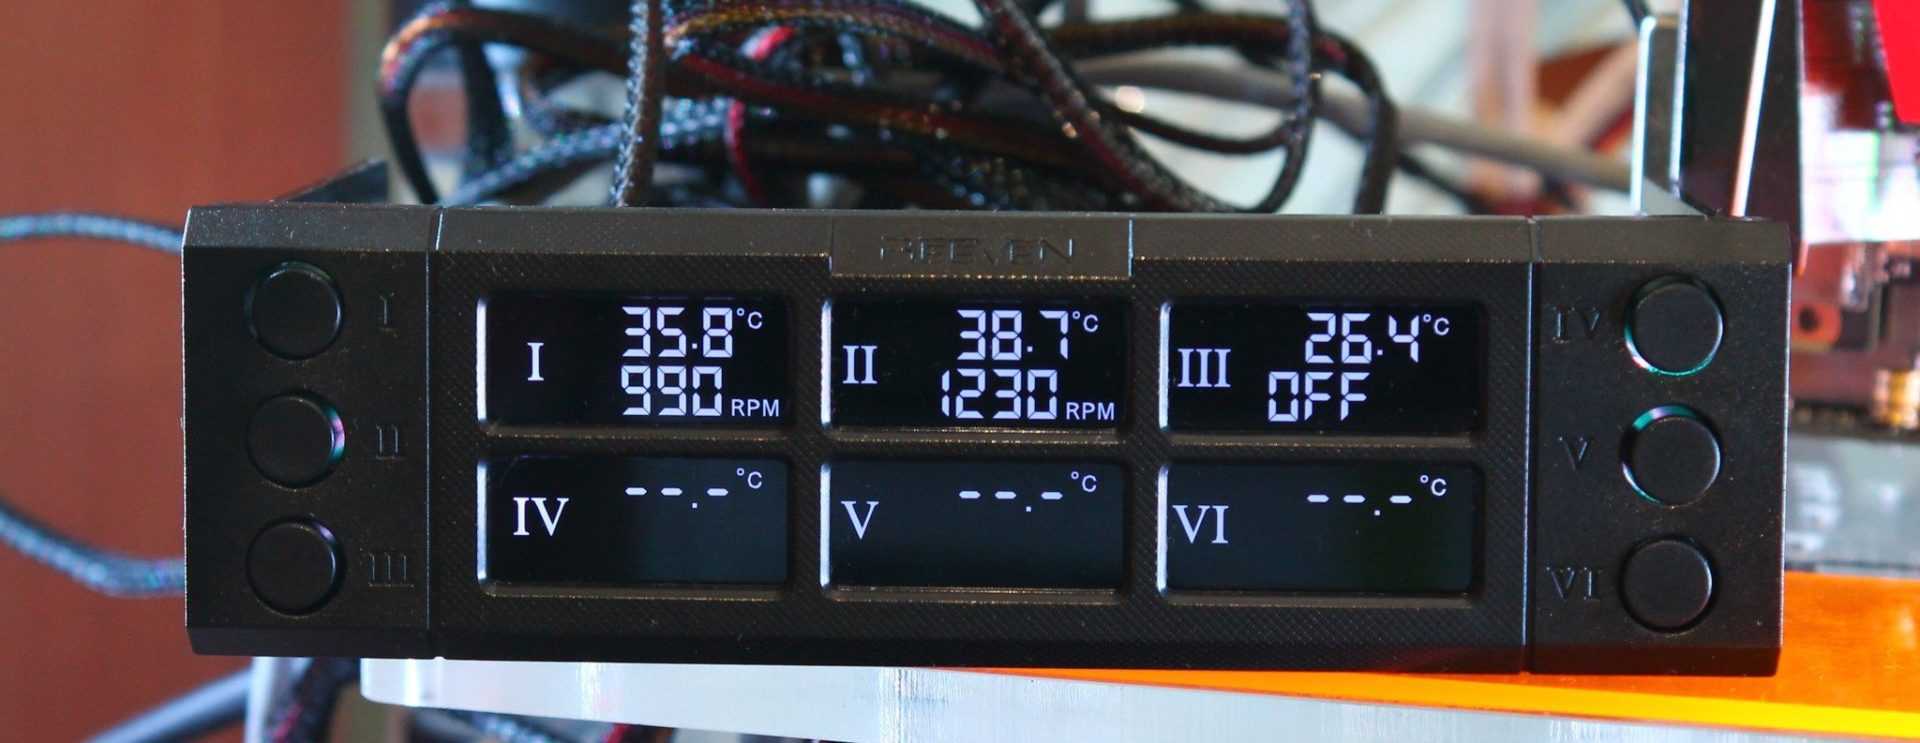 Esp32 fancontrol: реобас с функцией управления led-лентой своими руками